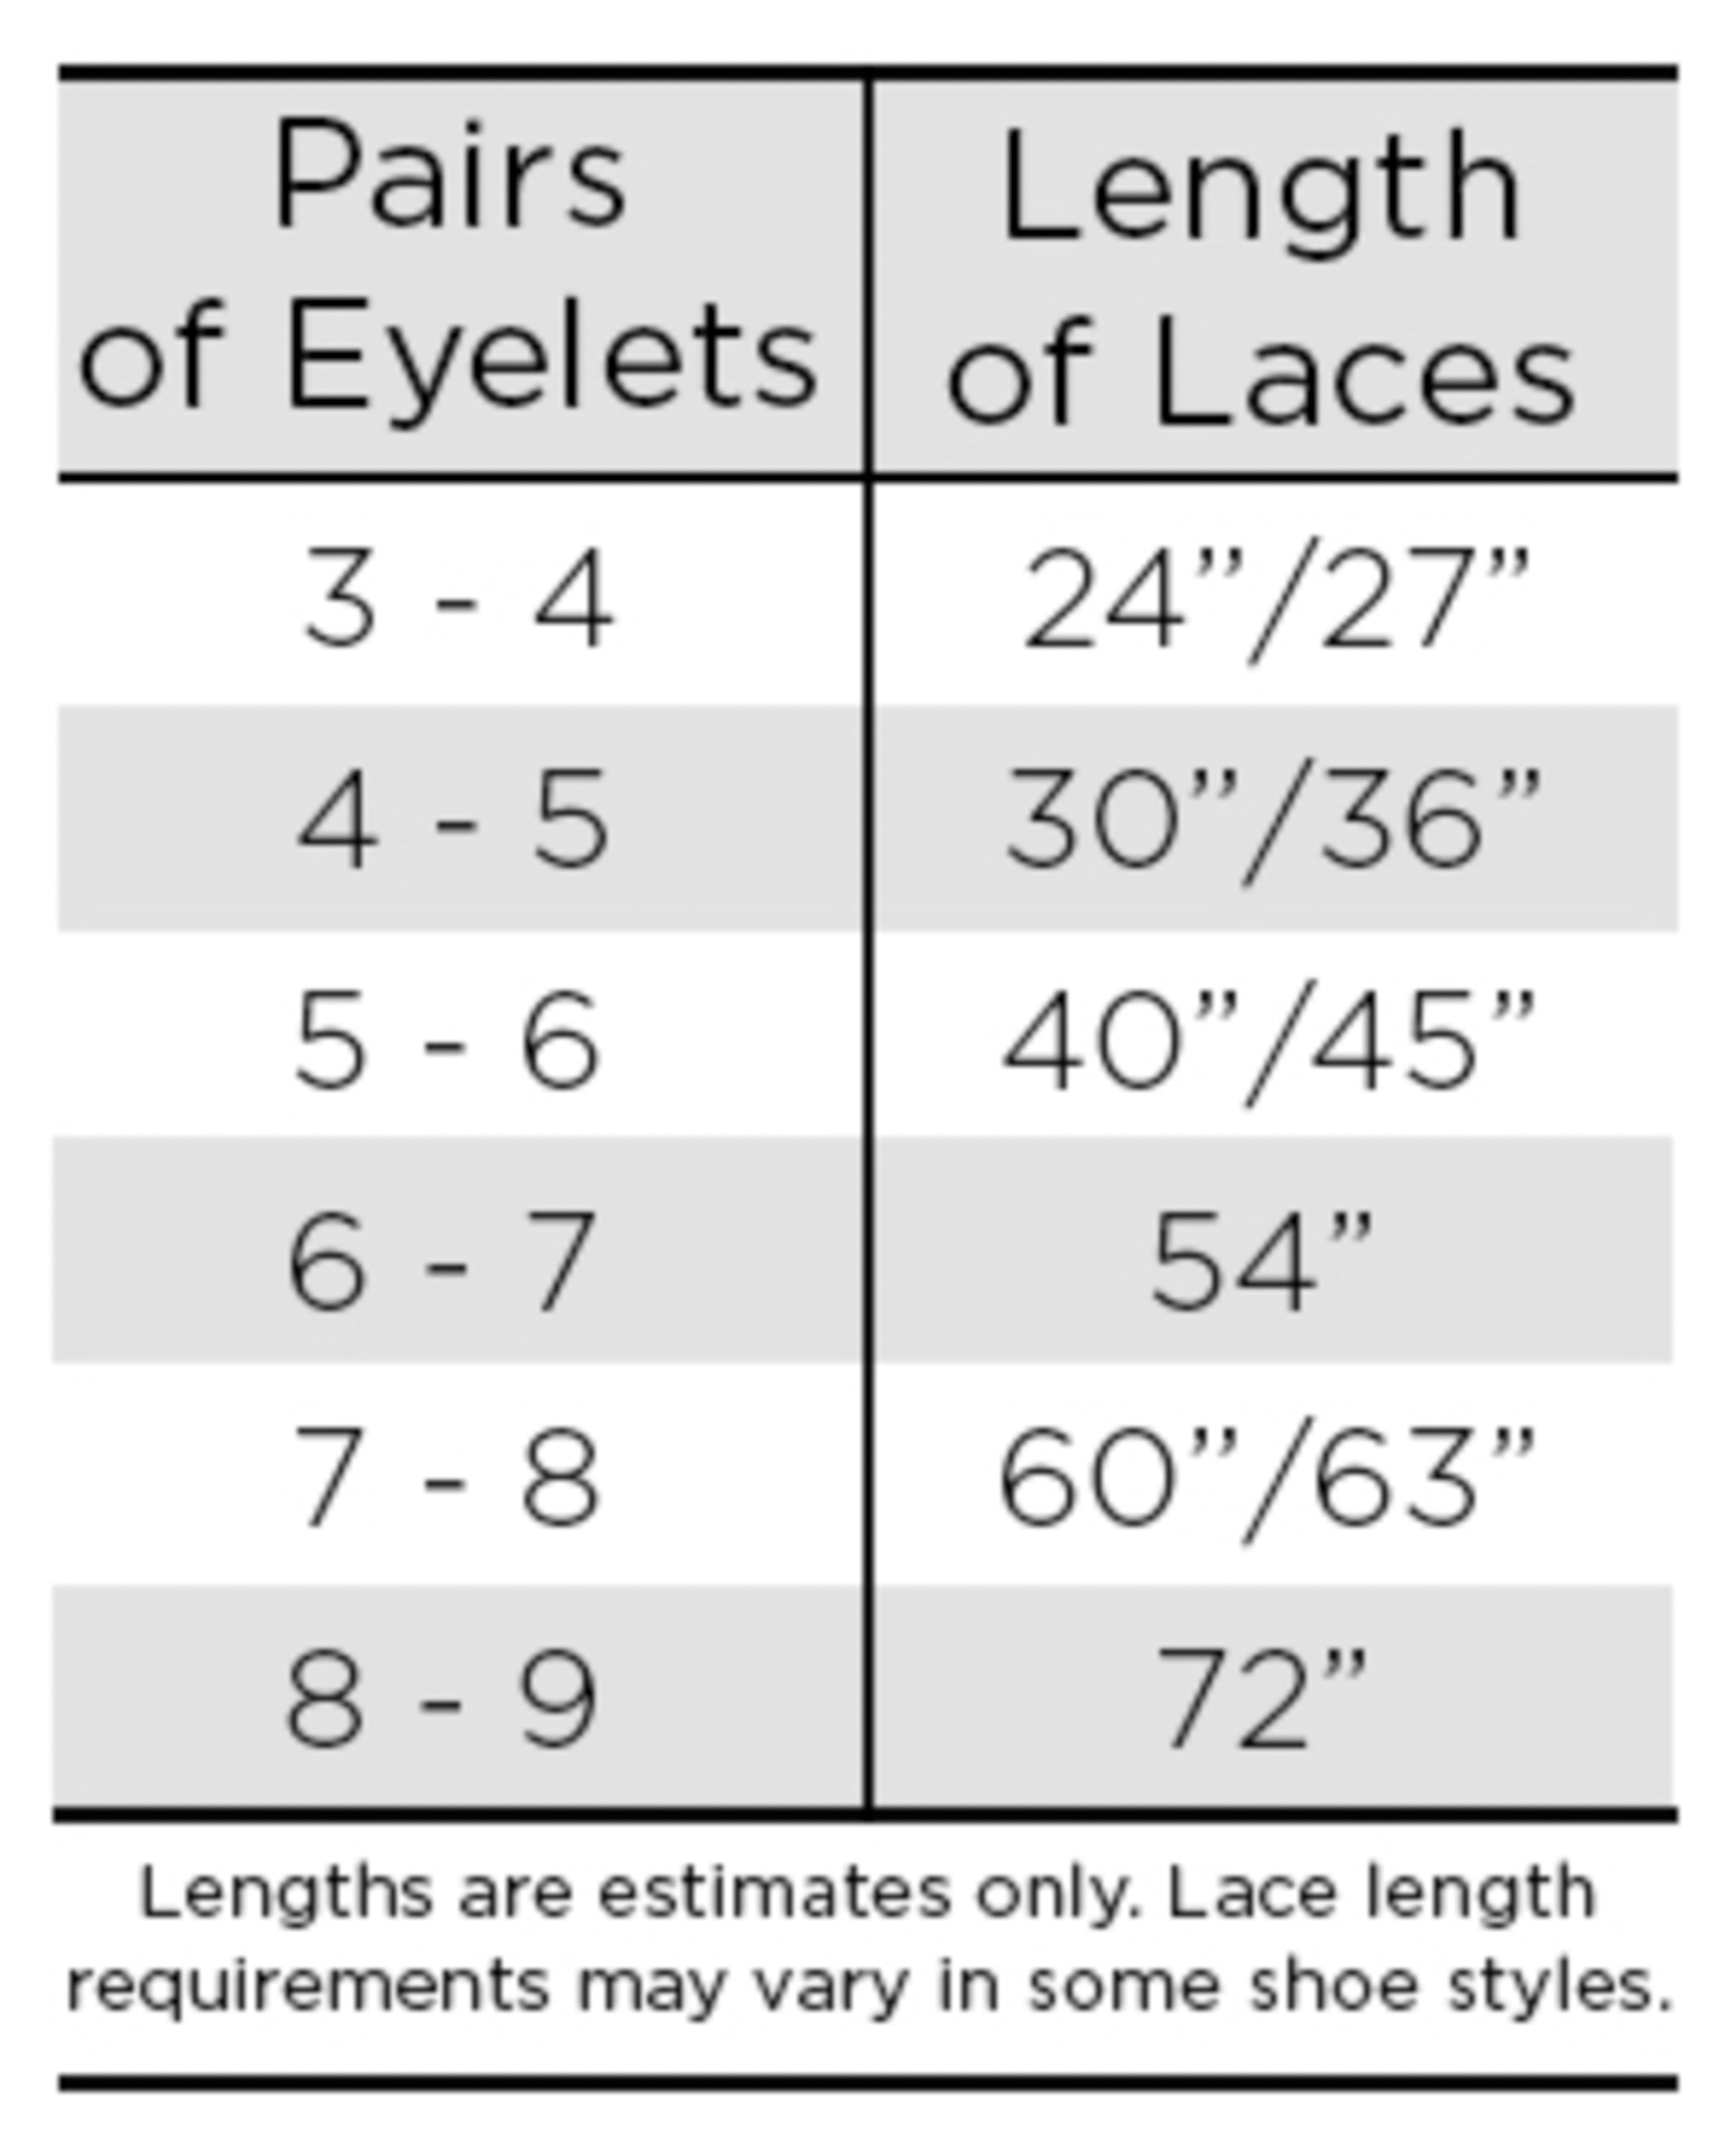 Laces sizes